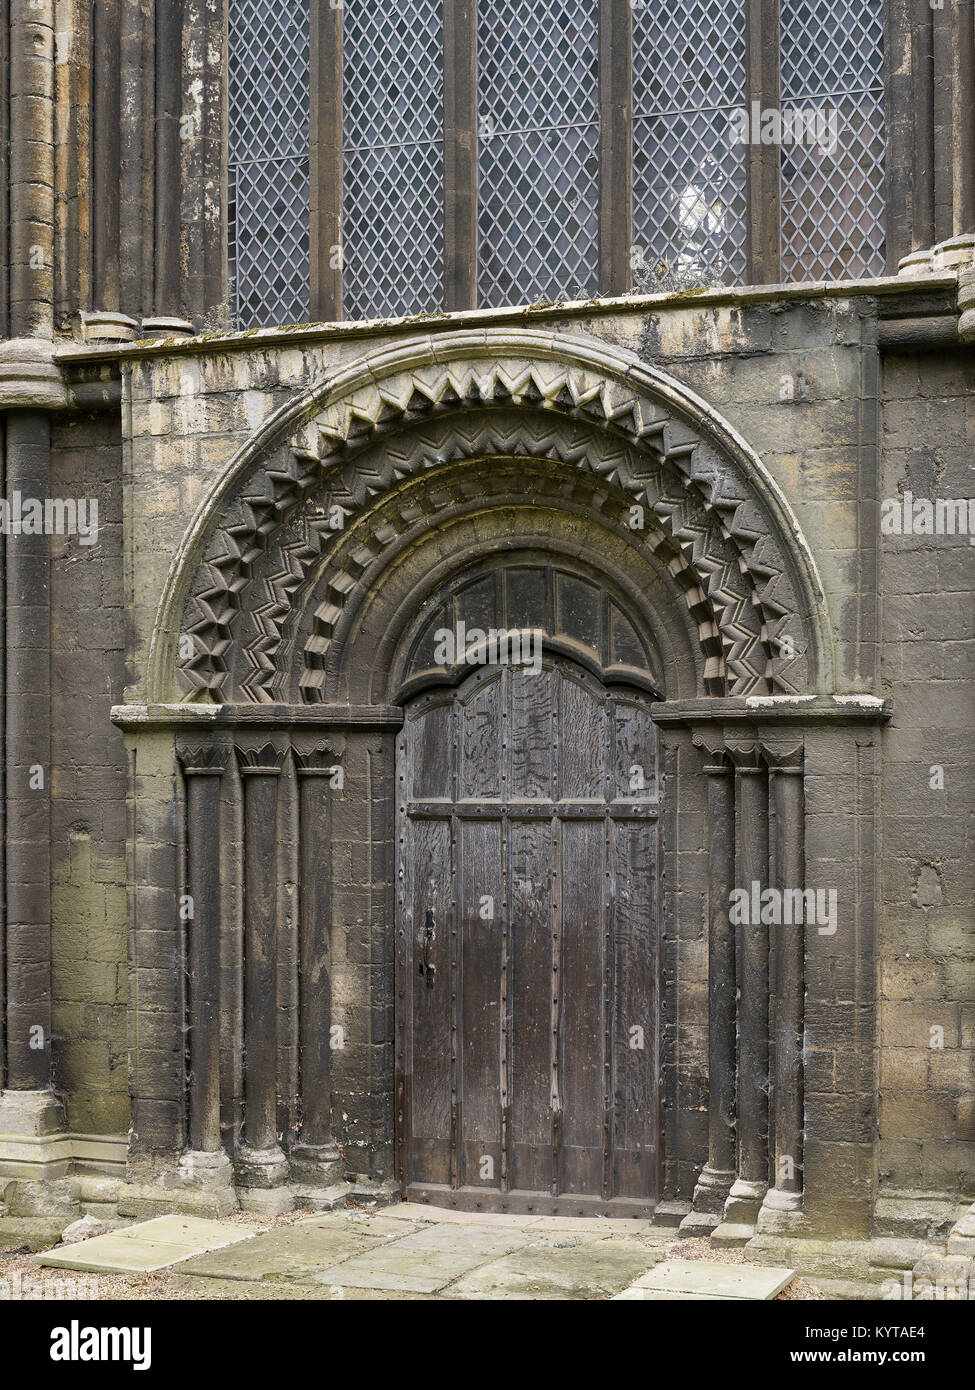 La catedral de Peterborough. Puerta Norte, con decoración de dientes de perros de Chevron en zigzag del siglo XII, finales de Norman. Foto de stock